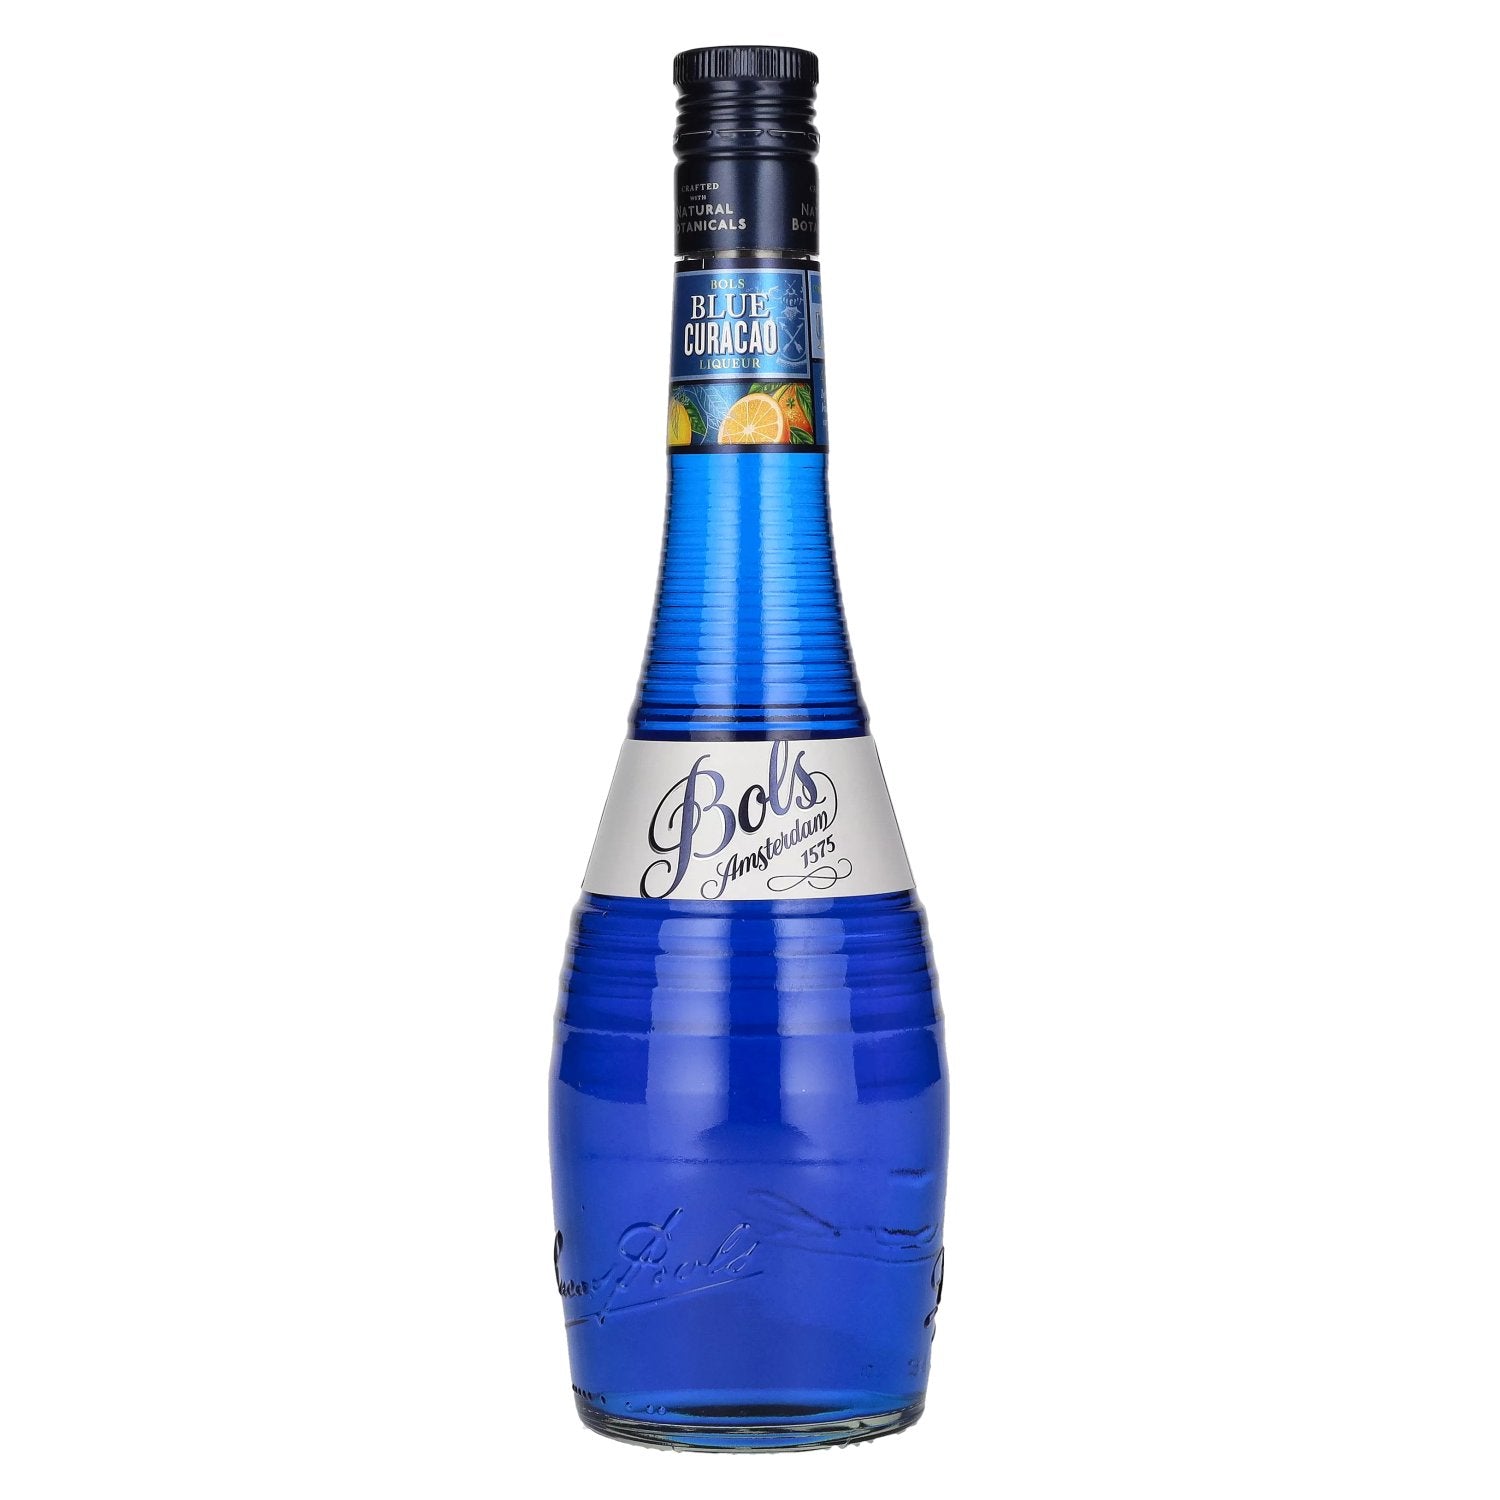 Bols Blue Curacao Liqueur 21% Vol. 0,7l